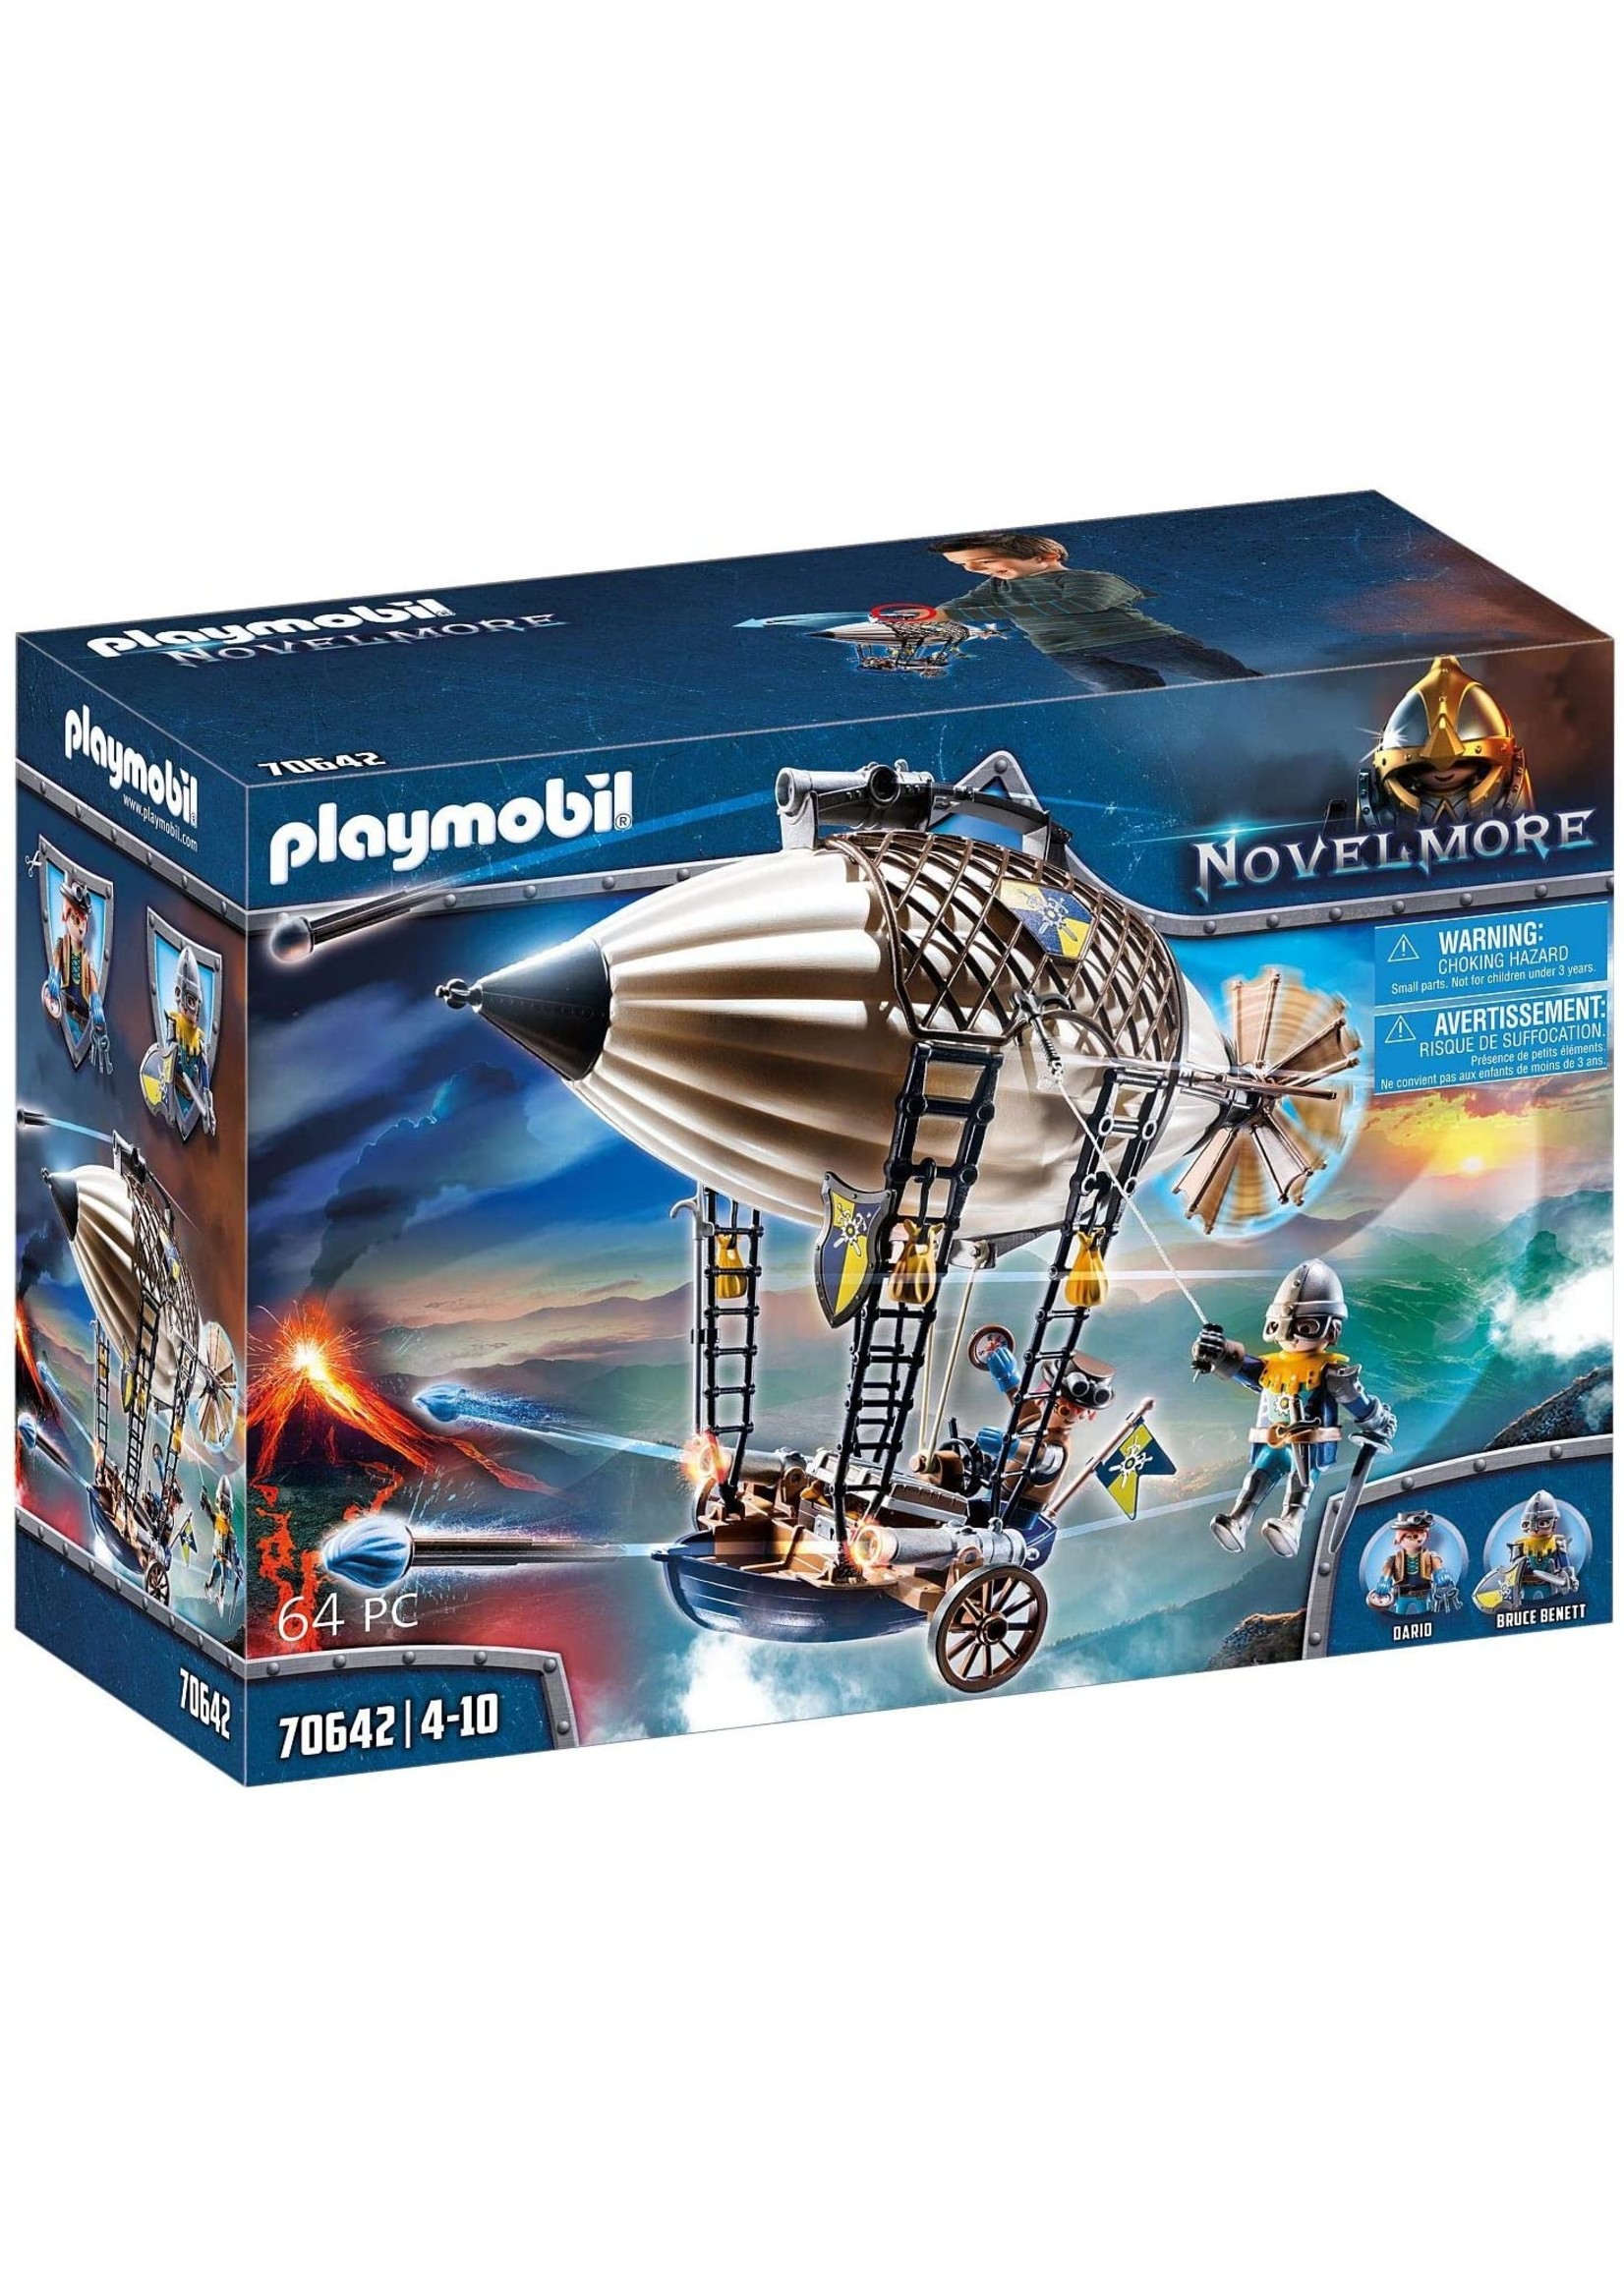 Playmobil Novelmore Knights Airship 70642